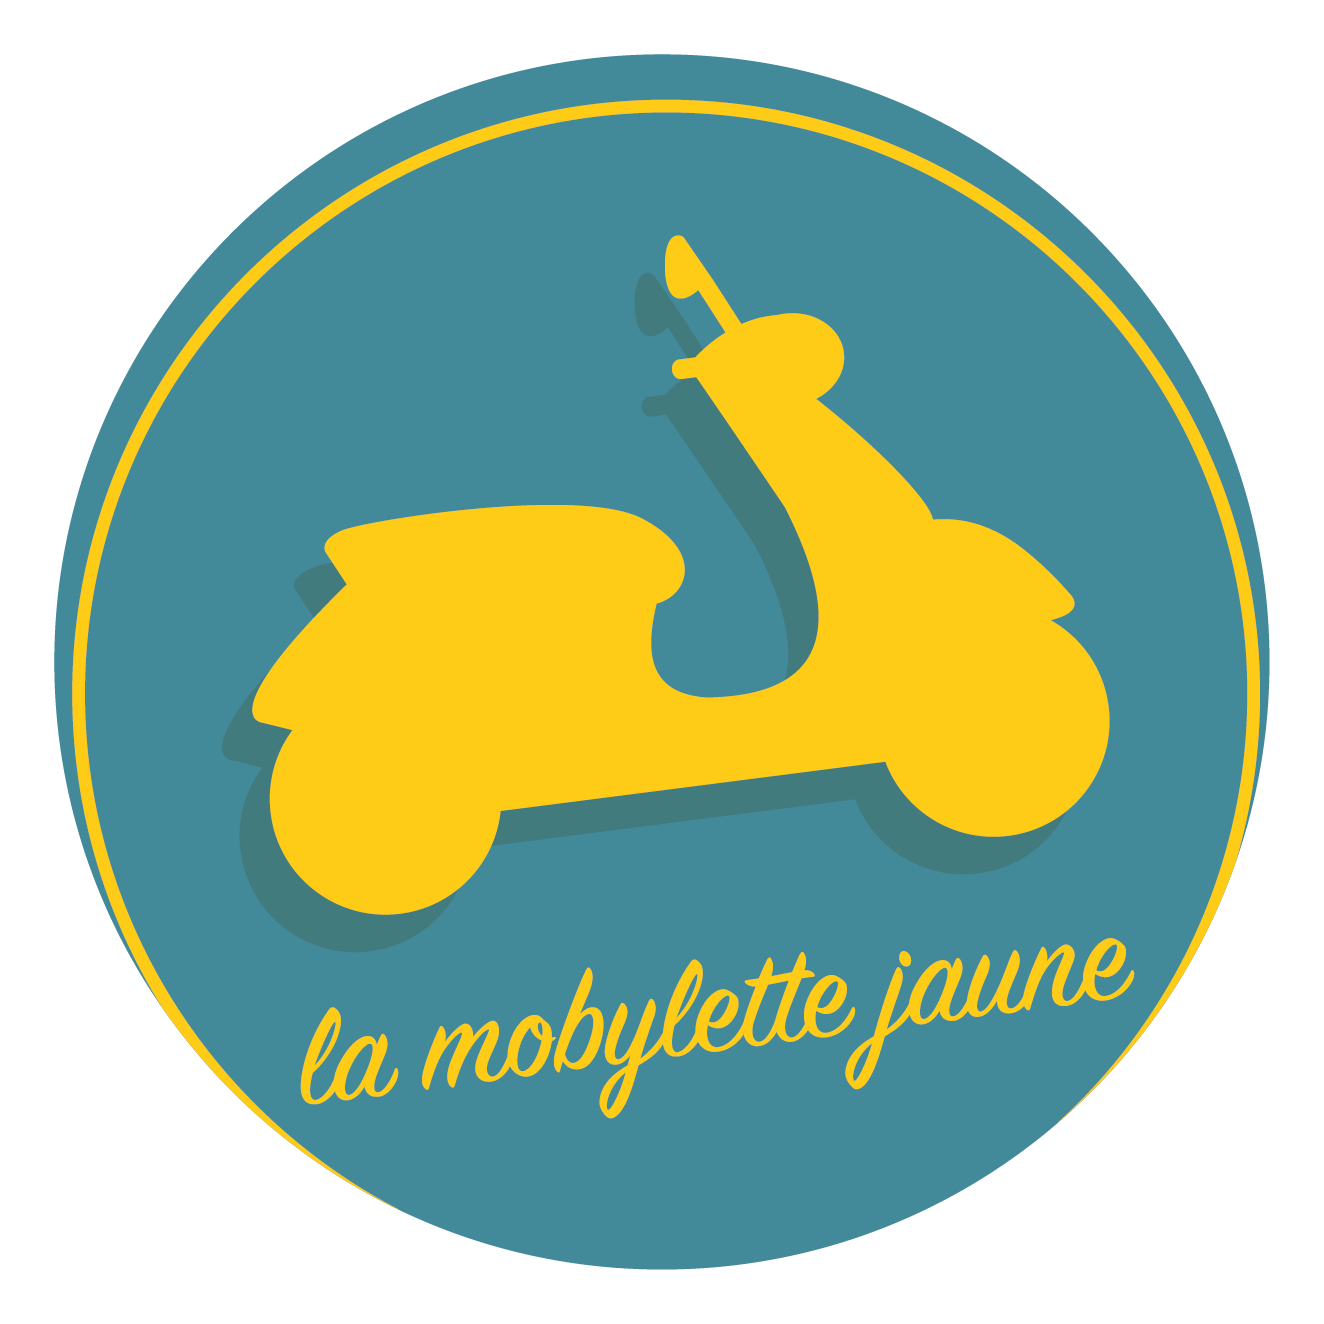 La Mobylette Jaune logo